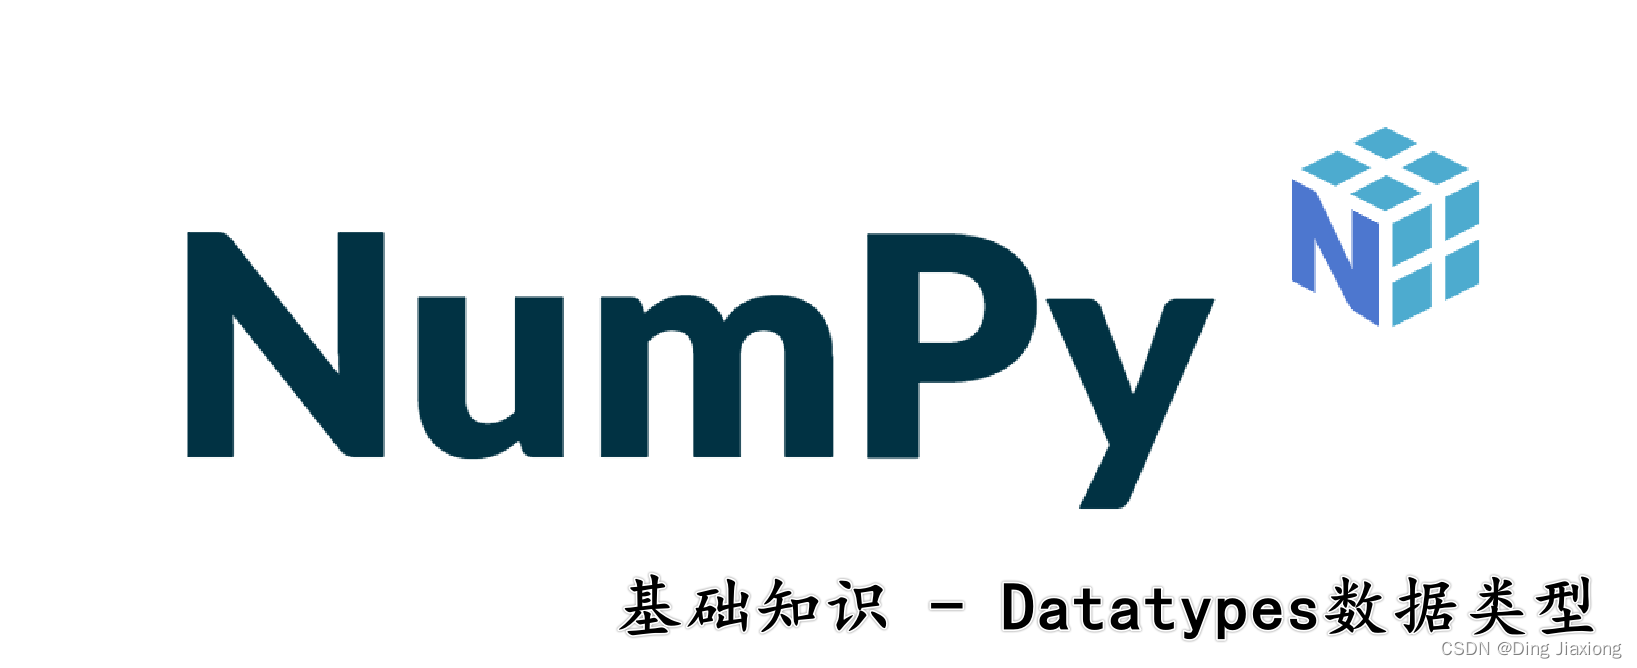 【Numpy基础知识】Datatypes数据类型